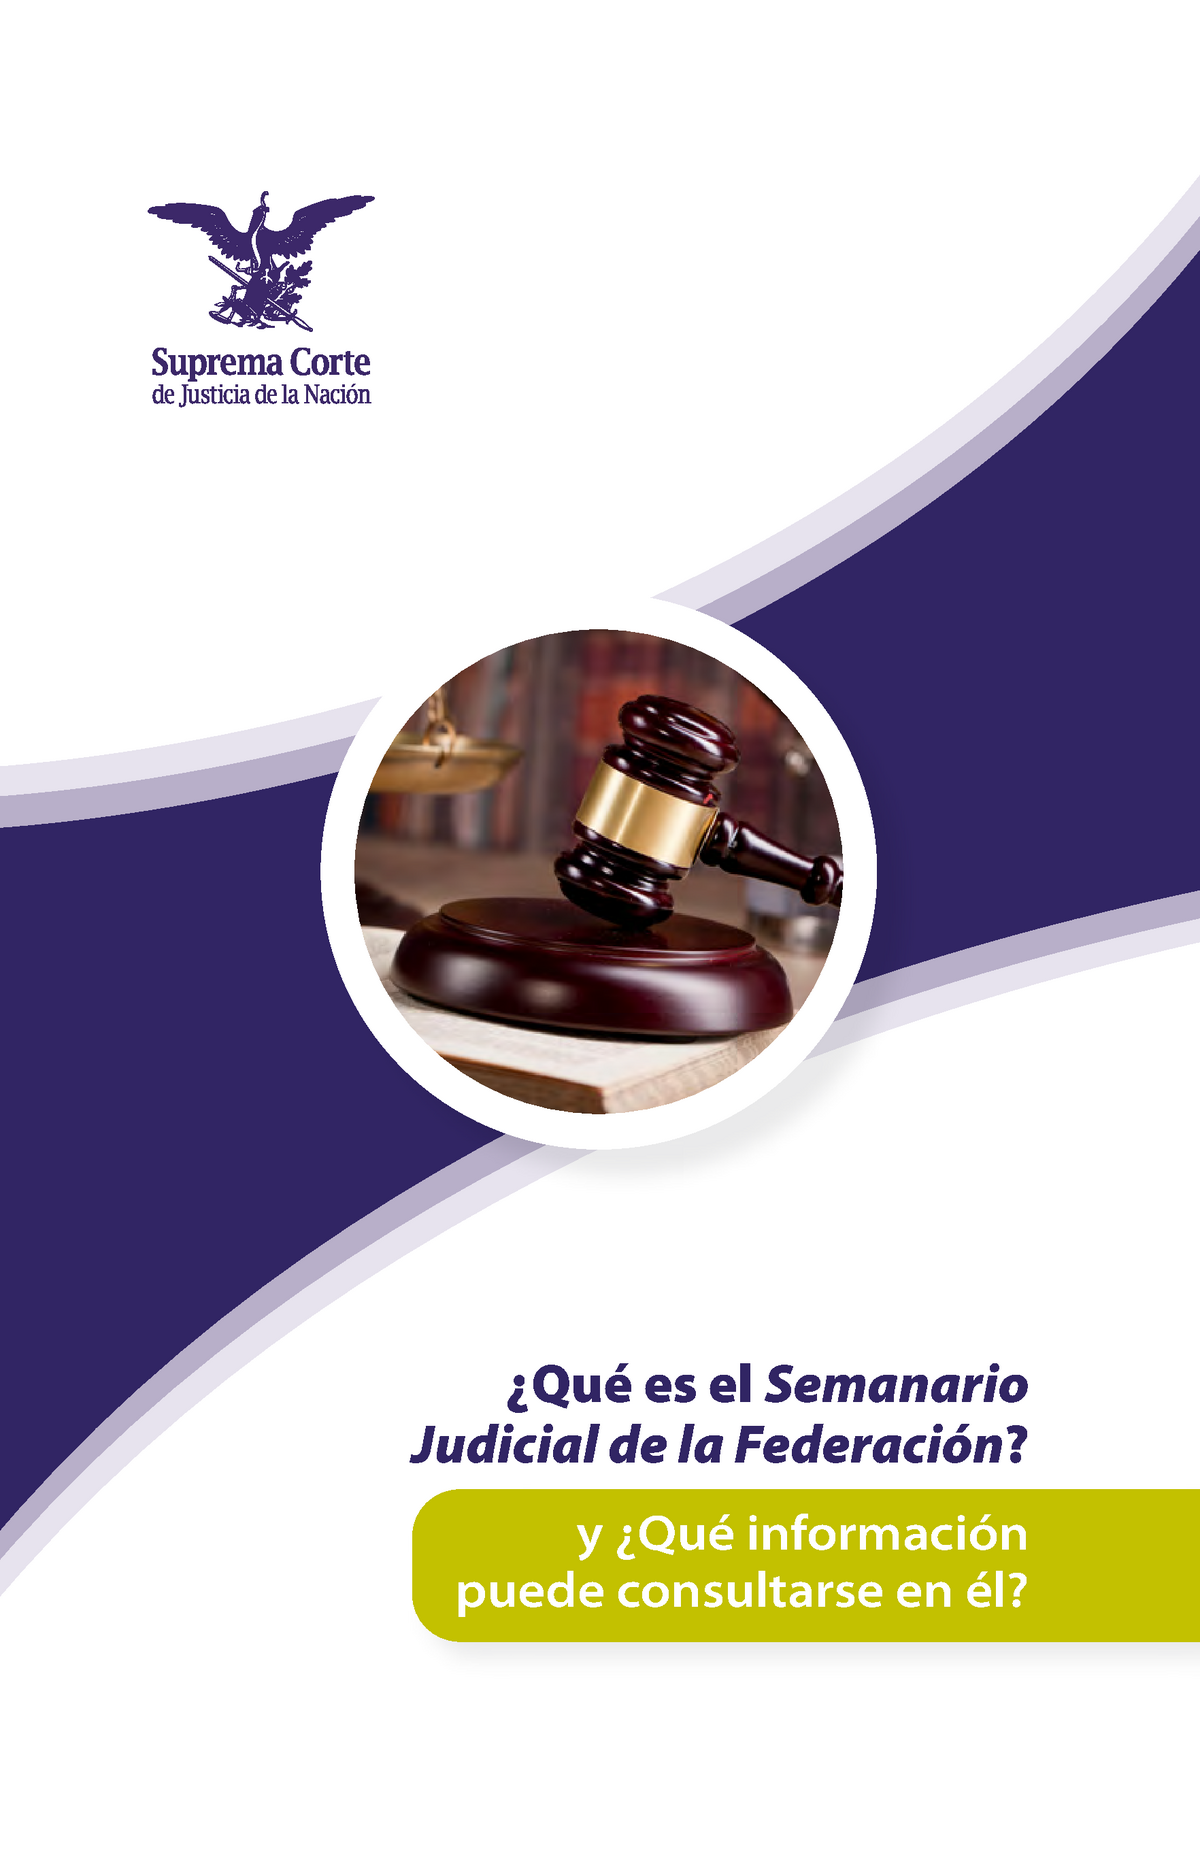 Folleto Semanario Judicial de la Federacion Qué es el Semanario Judicial de la Federación y